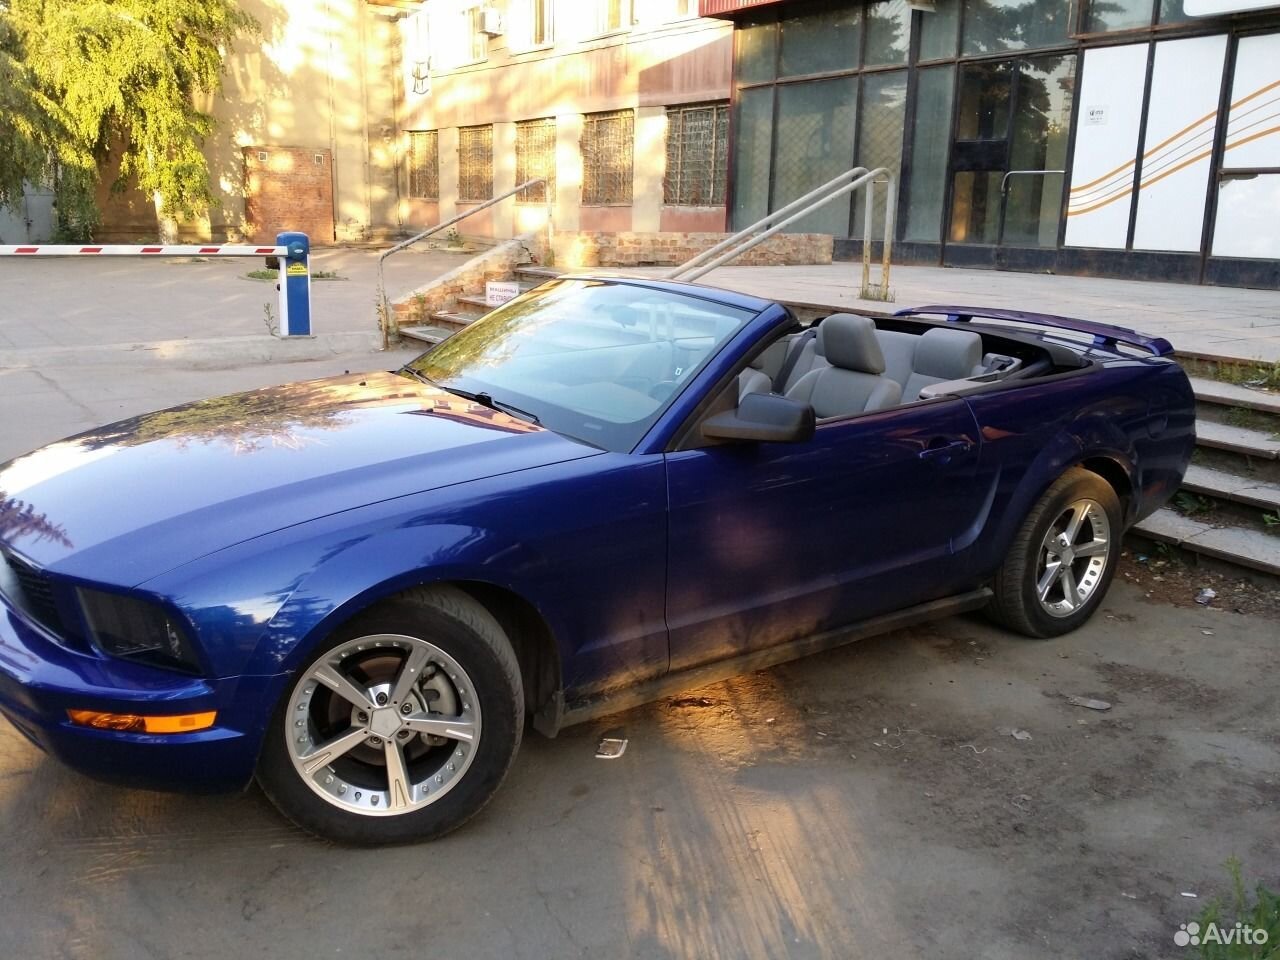 Б у автомобили саратова. Ford Mustang 4.0 at голубой. Форд Мустанг Саратов. Форд Мустанг кабриолет 2005 года. Дорогие машины в Саратове.